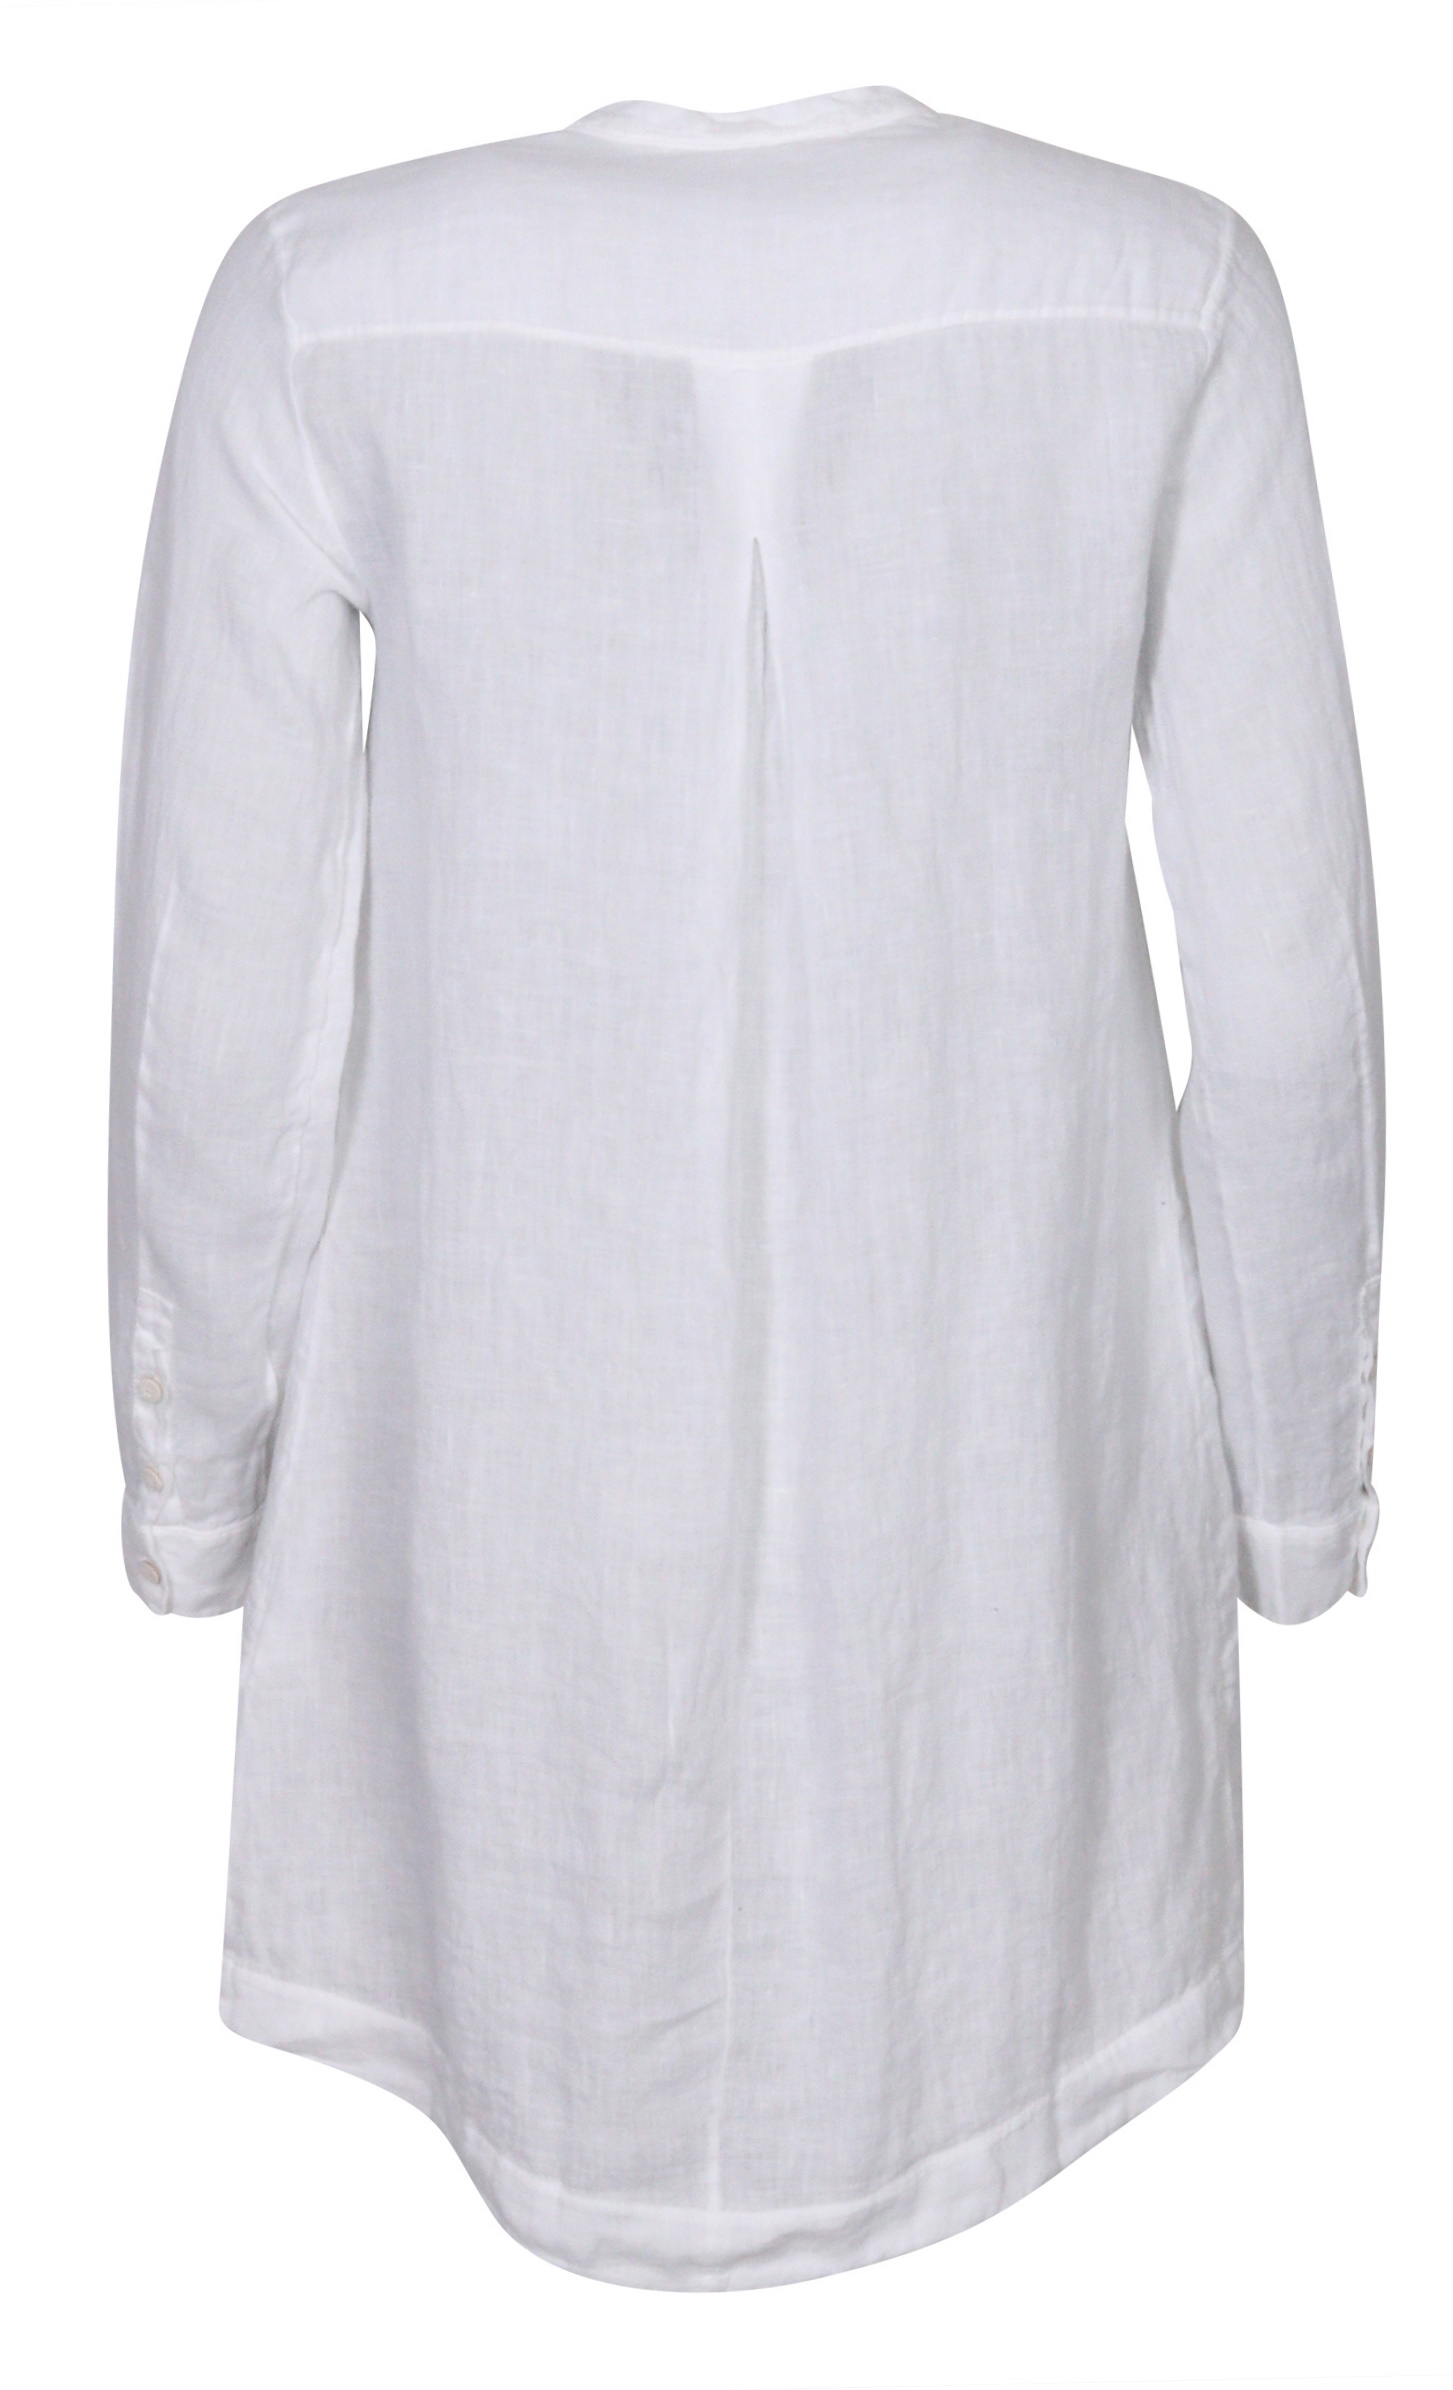 Transit Par Such Linen Shirt White L